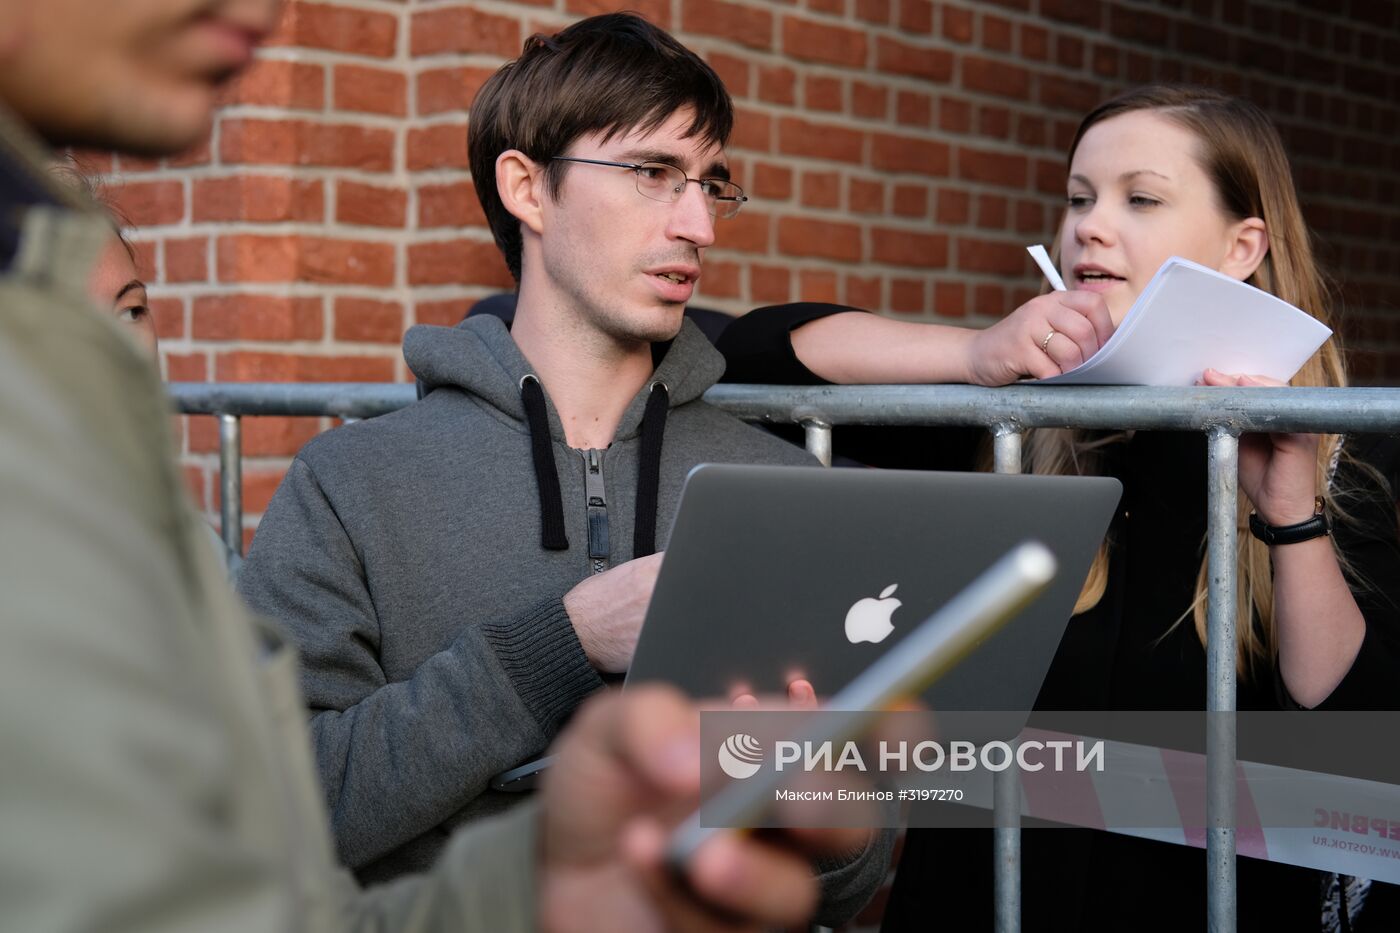 Сотрудников офиса "Яндекса" в Москве эвакуировали после звонка о минировании